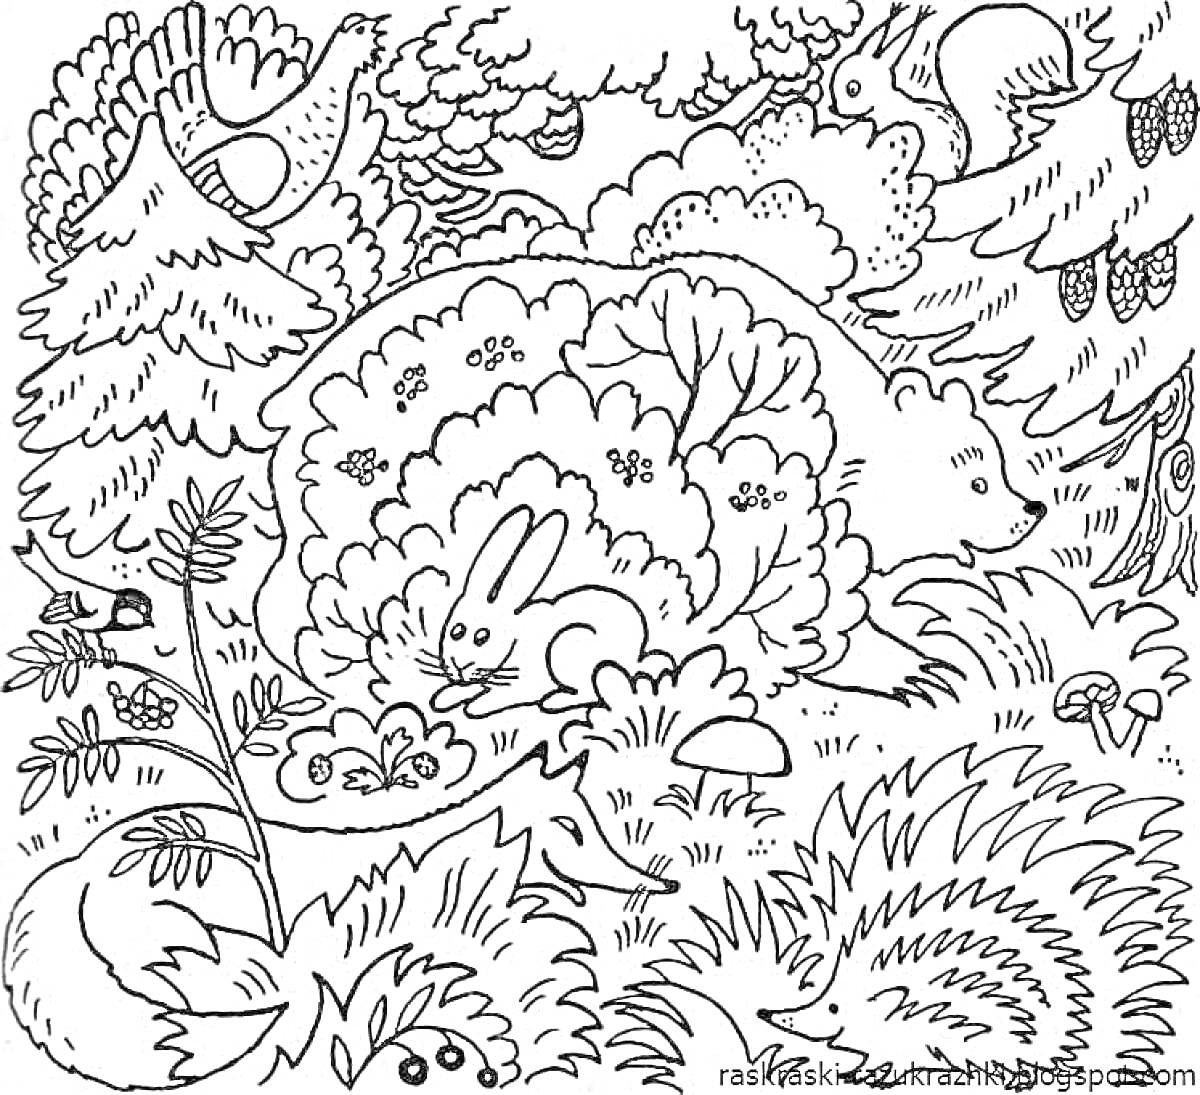 На раскраске изображено: Лес, Кролик, Медведь, Лиса, Природа, Кусты, Деревья, Грибы, Животные, Еж, Птица